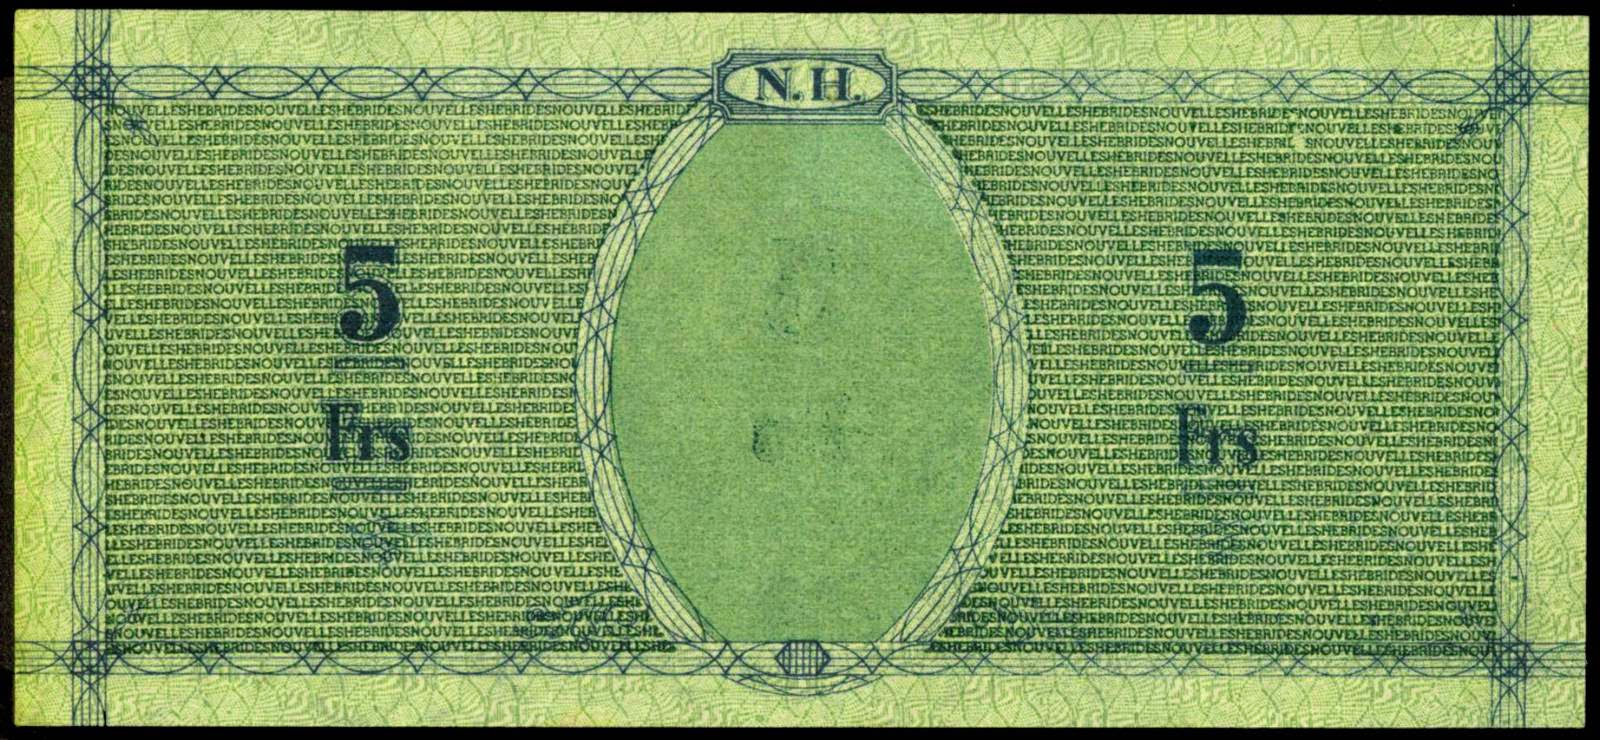 New Hebrides 5 Francs banknote